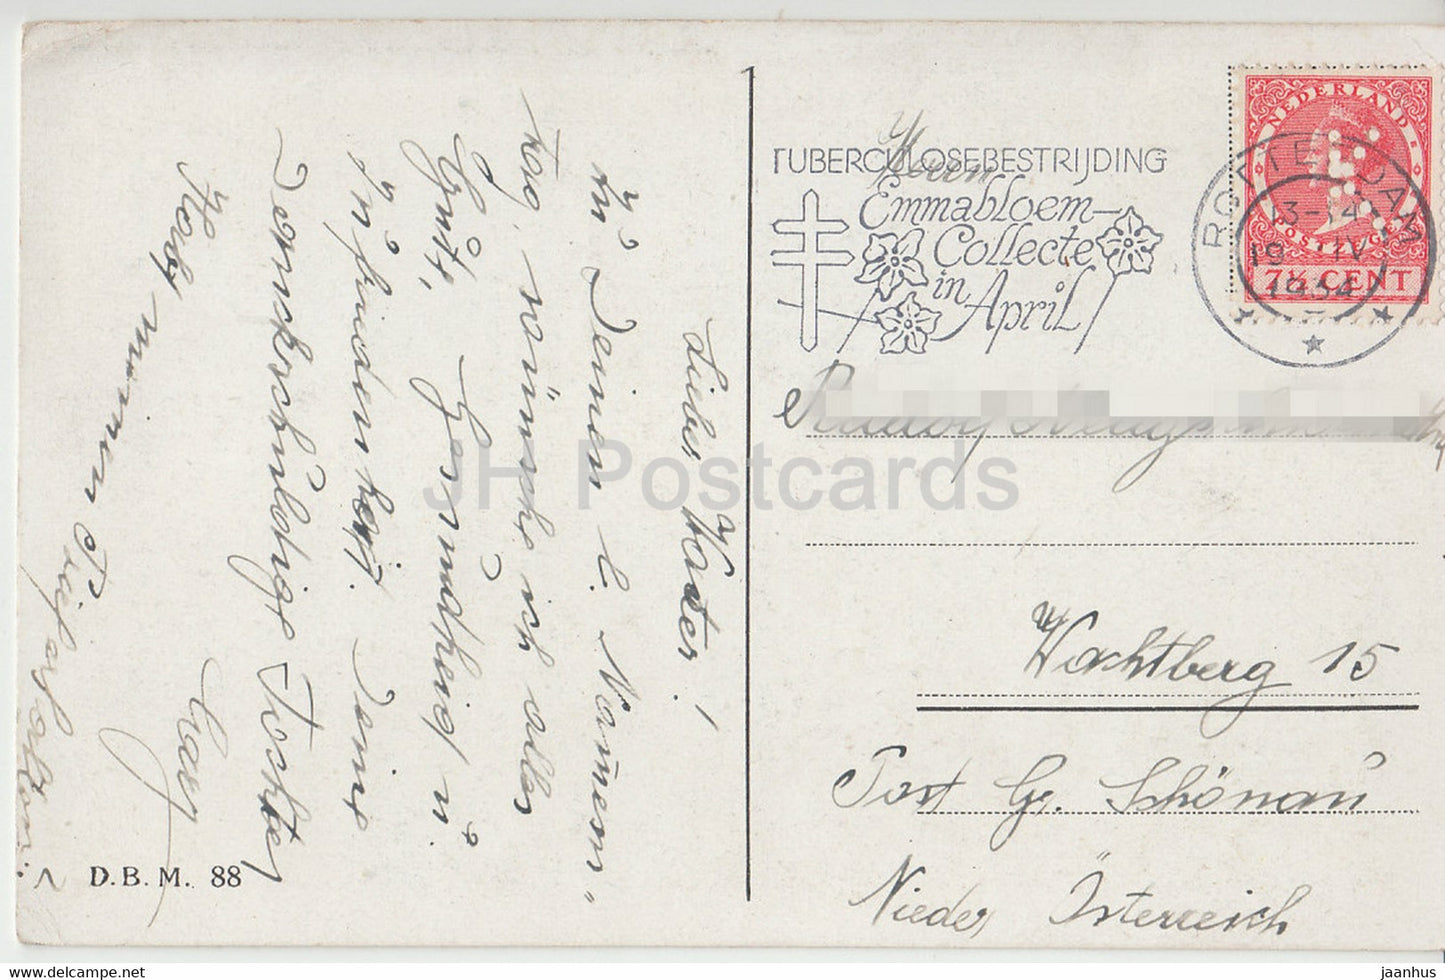 Blumenfeld - Windmühle - DBM 88 - alte Postkarte - 1934 - Niederlande - gebraucht